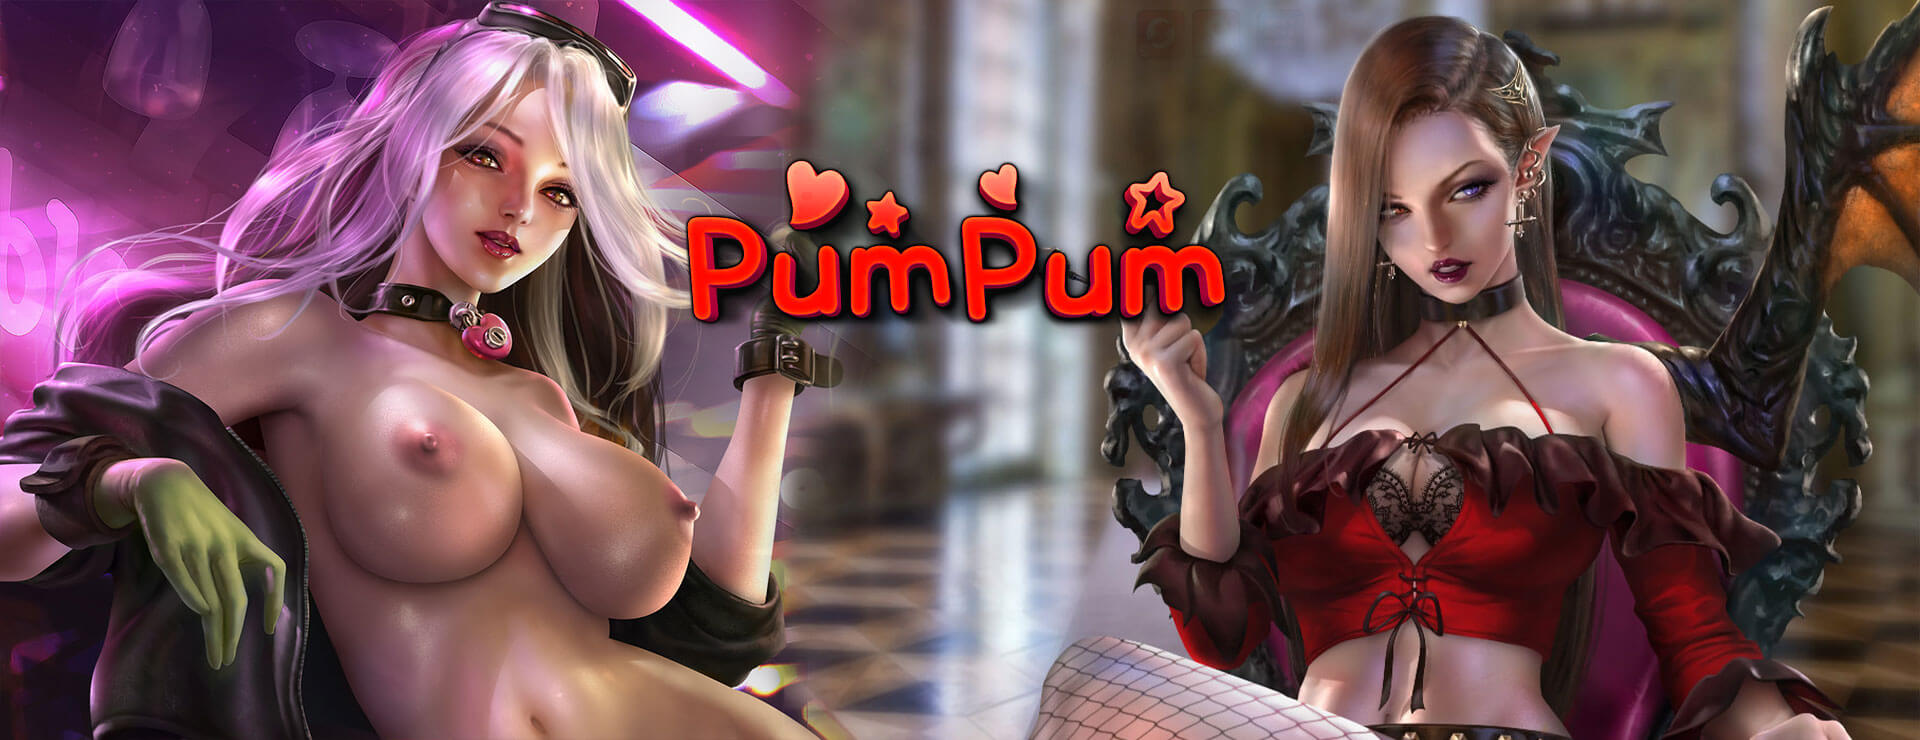 PumPum - パズル ゲーム